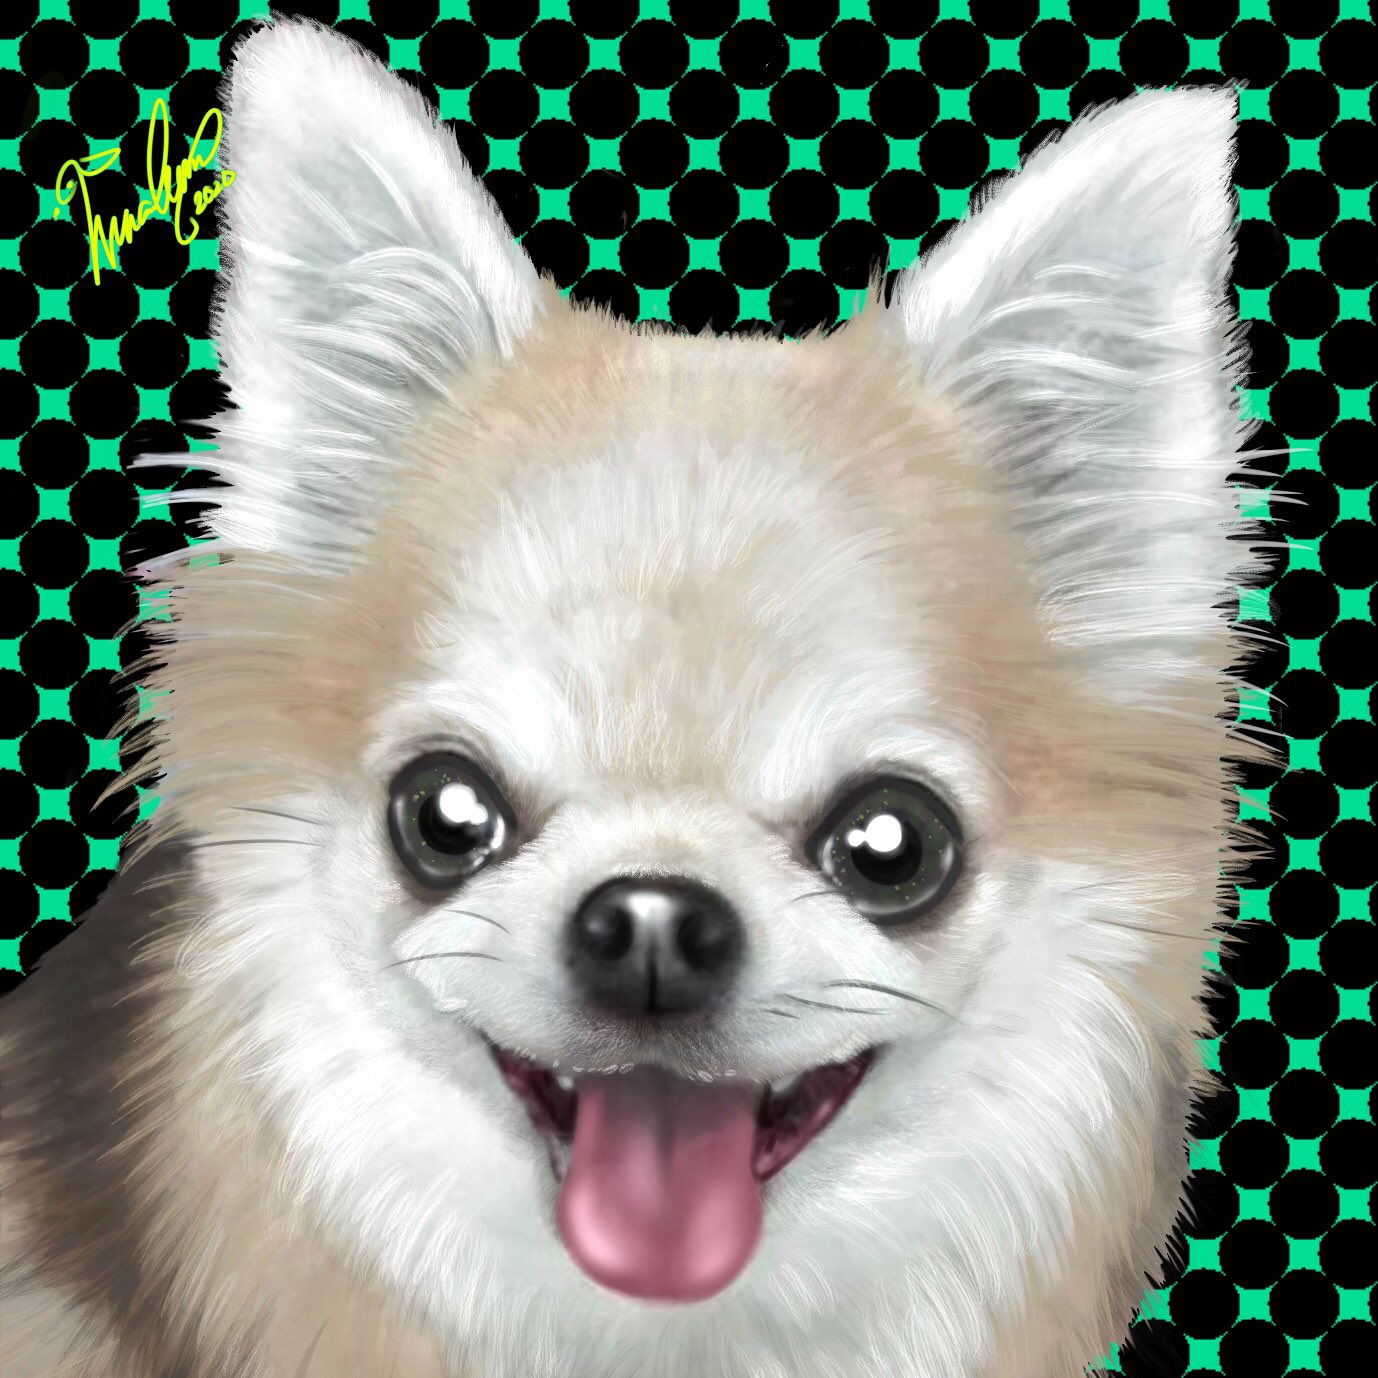 うぃんくるむ ペット肖像画 チワワ Chihuahua 小型犬 犬イラスト Dogillustration デジタルイラスト 厚塗り Digitalillustration オーダー受付中 Winculum うぃんくるむ 犬好きな人と繋がりたい イラスト好きな人と繋がりたい T Co